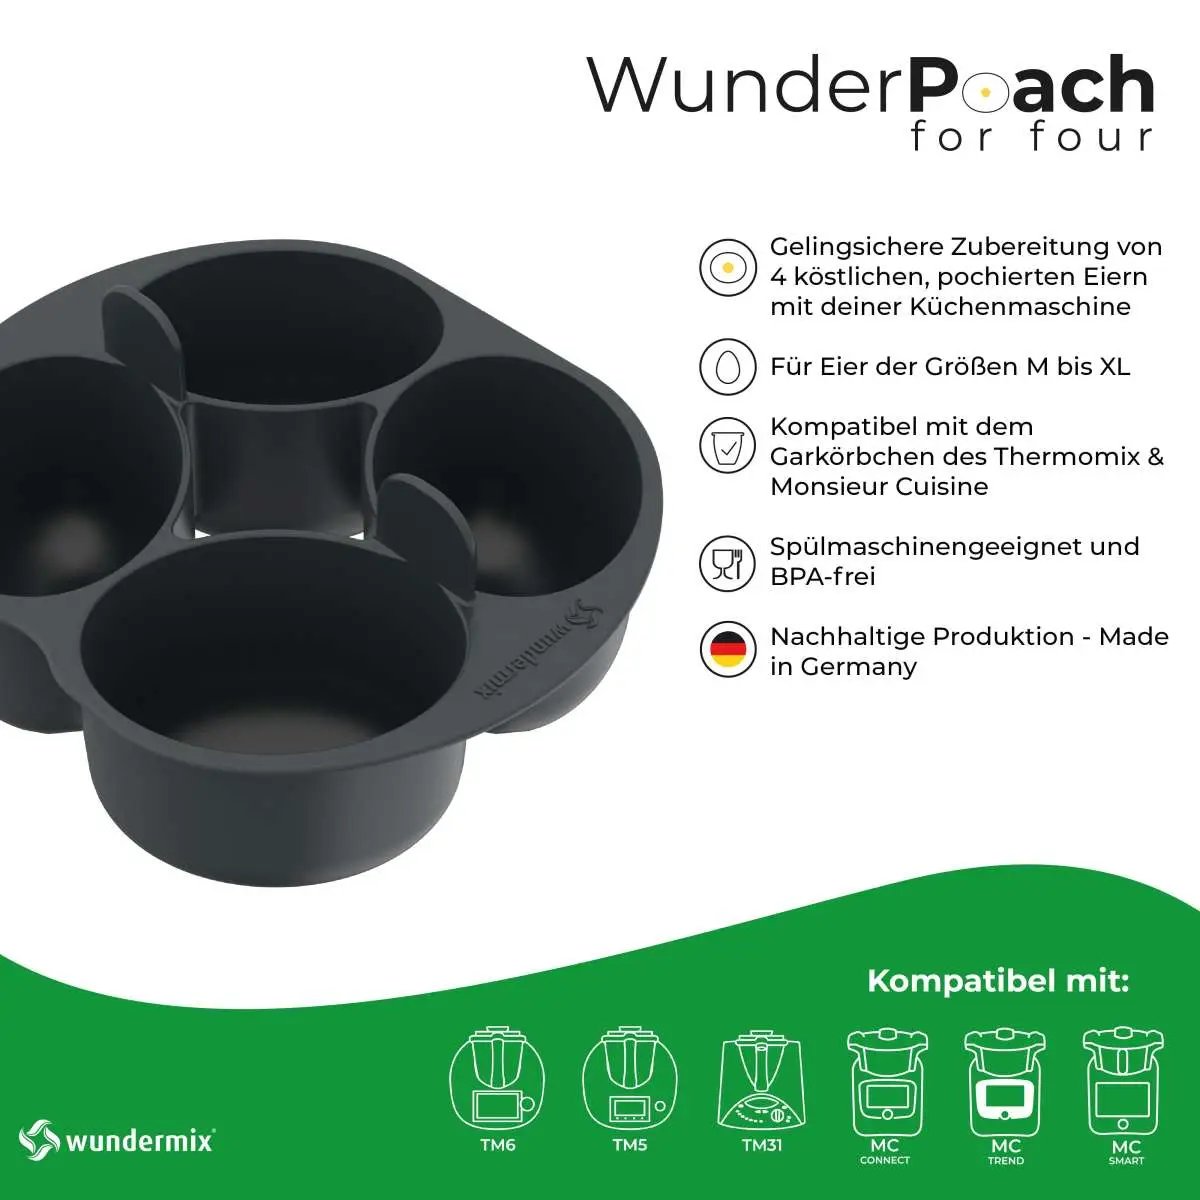 WunderPoach® for four | Pochiereinsatz für Thermomix & Monsieur Cuisine - Wundermix GmbH